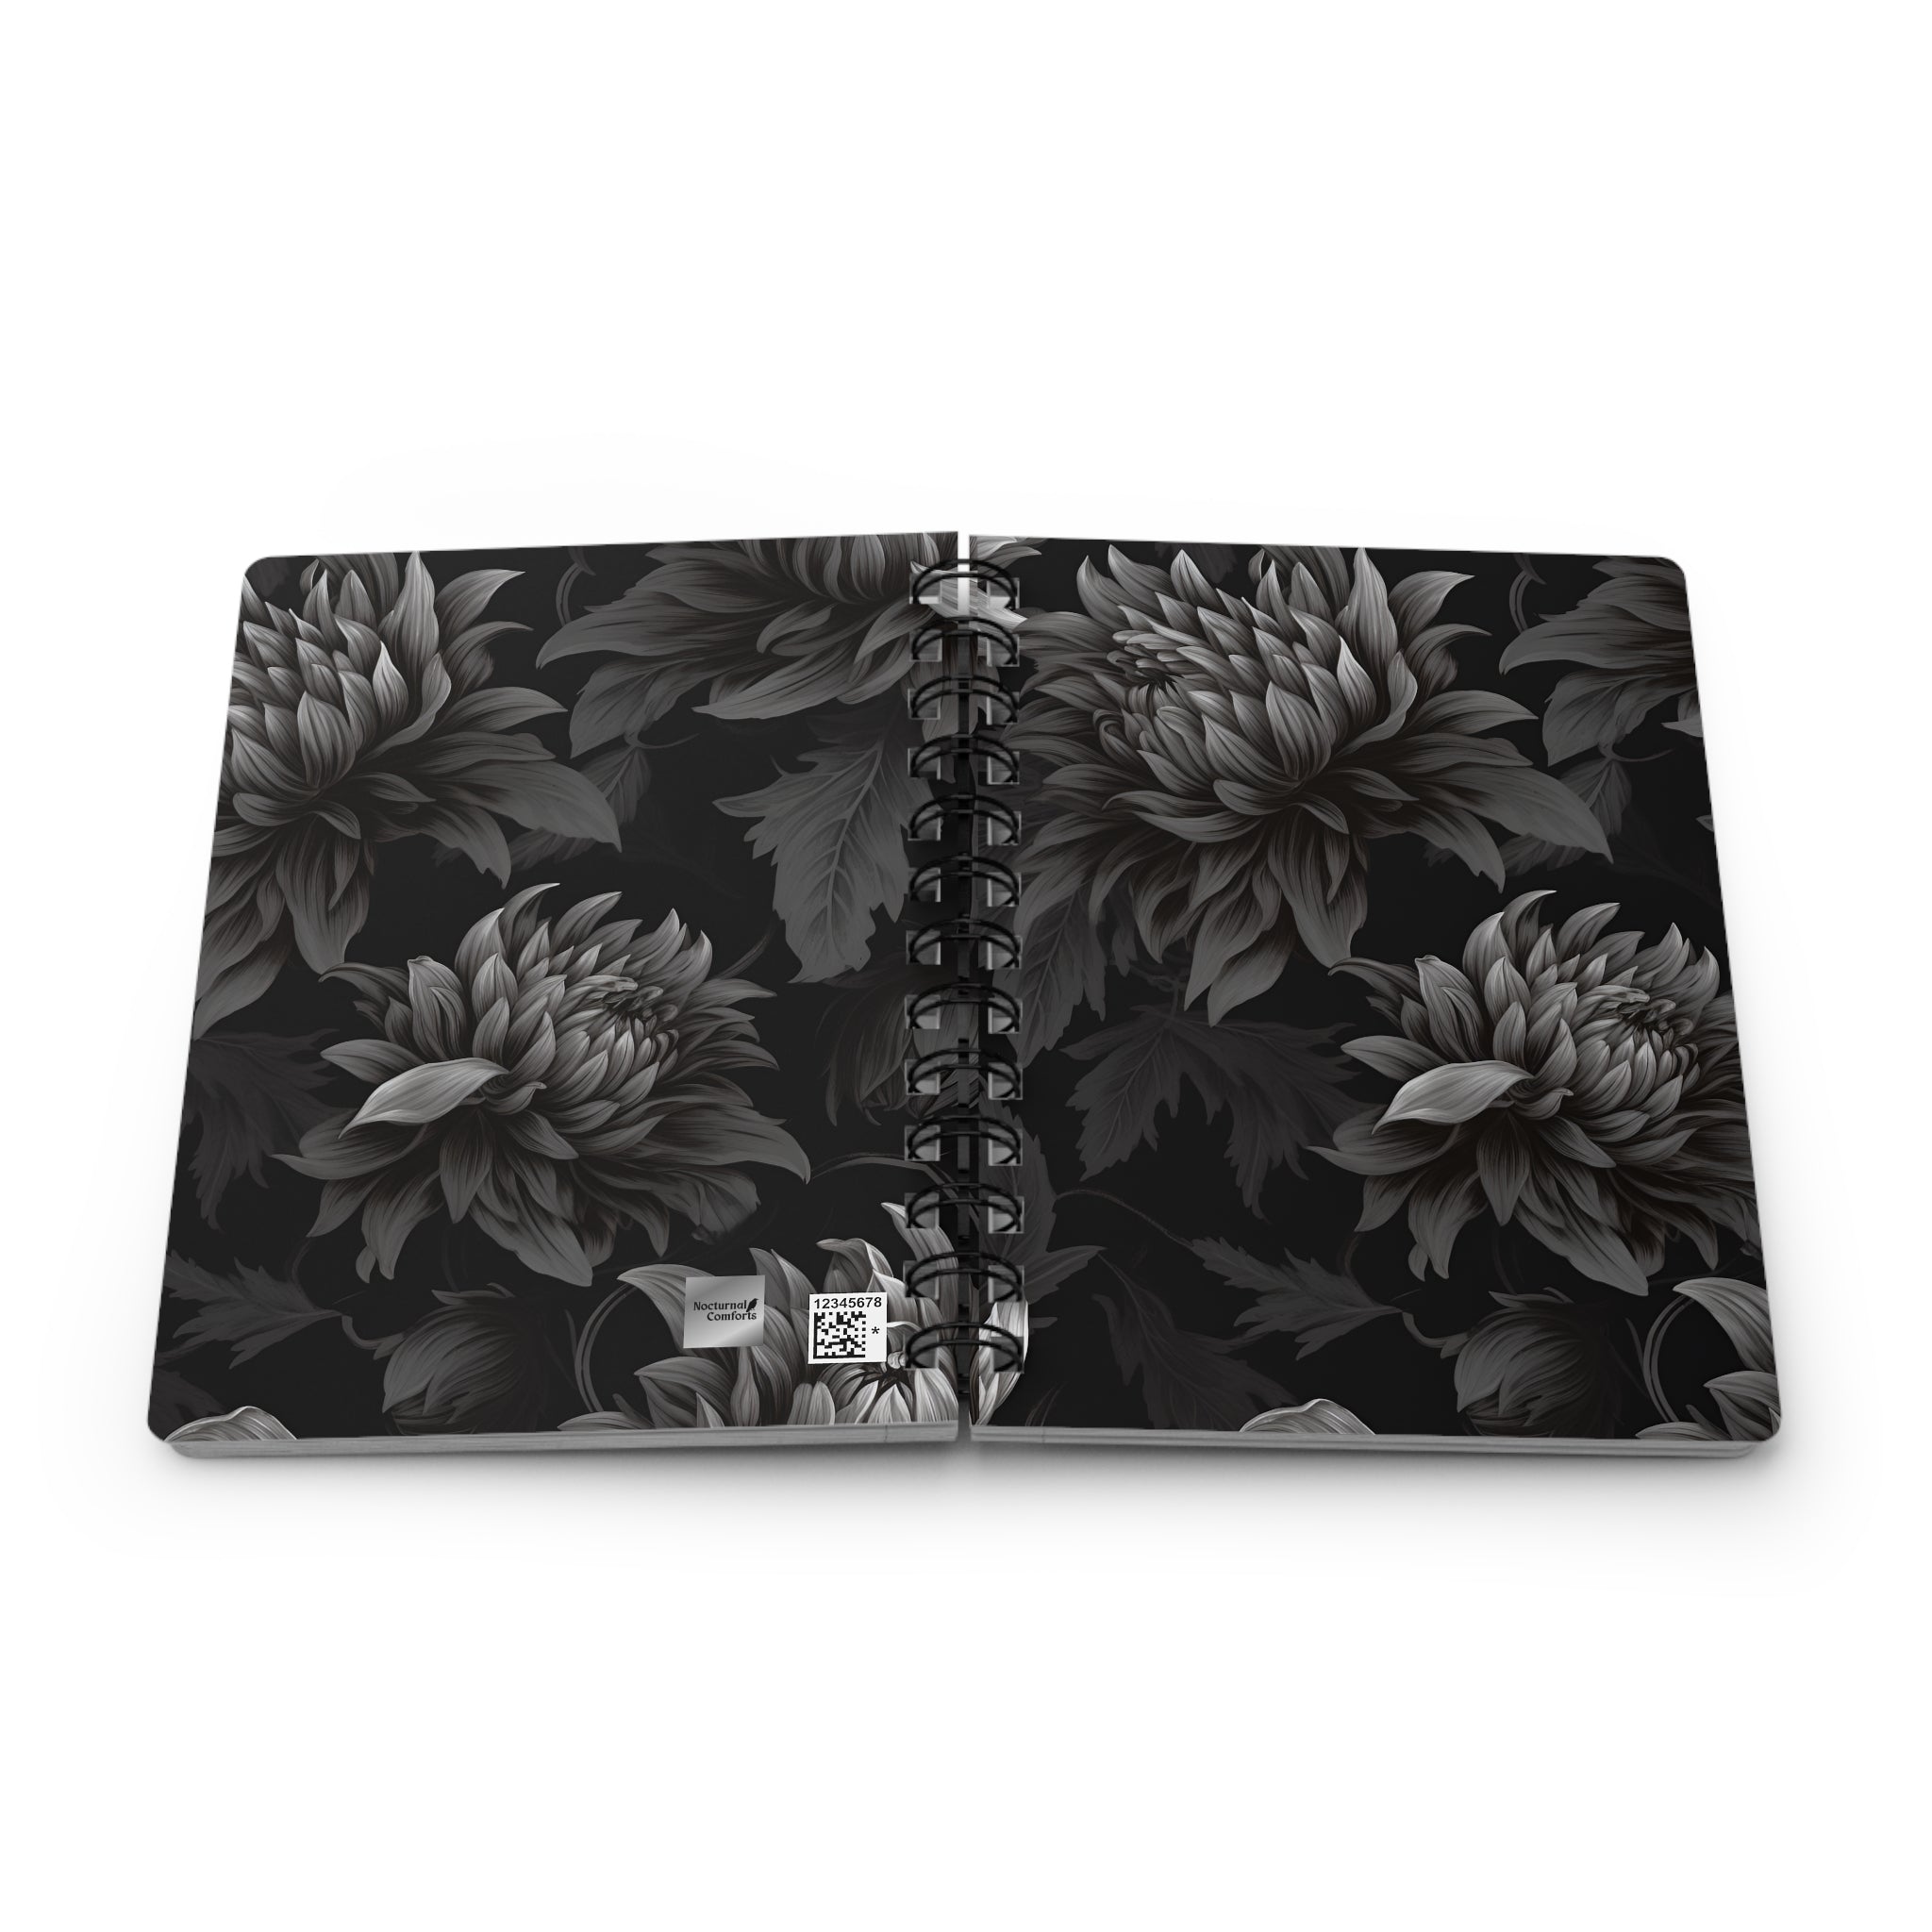 Midnight Black Dahlia Spiral Notebook, 5 x 7 inch